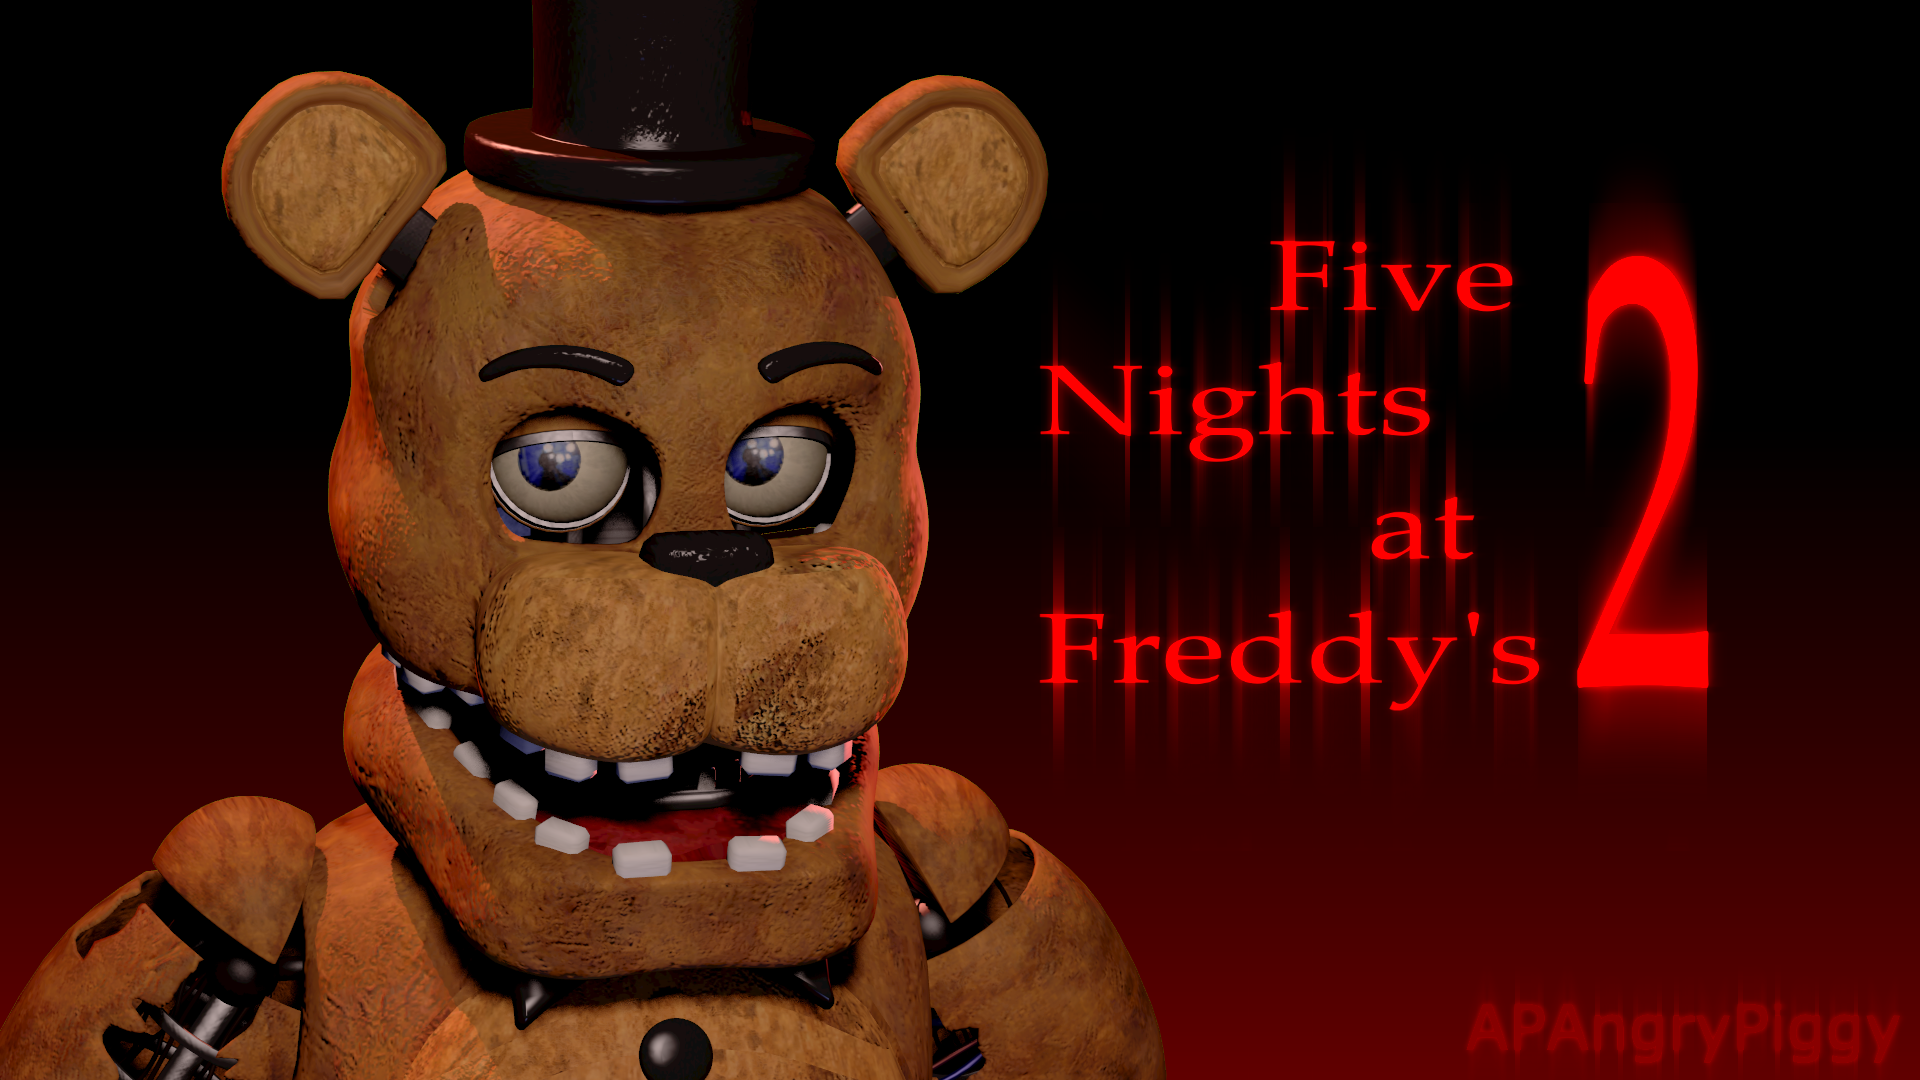 Файф найтс фредди. Файв Найтс АТ Фредди. Фредди 5 ночей с Фредди 2. Фредди ФНАФ 1 И 2. Five Nights at Freddy' s 1 Фредди.